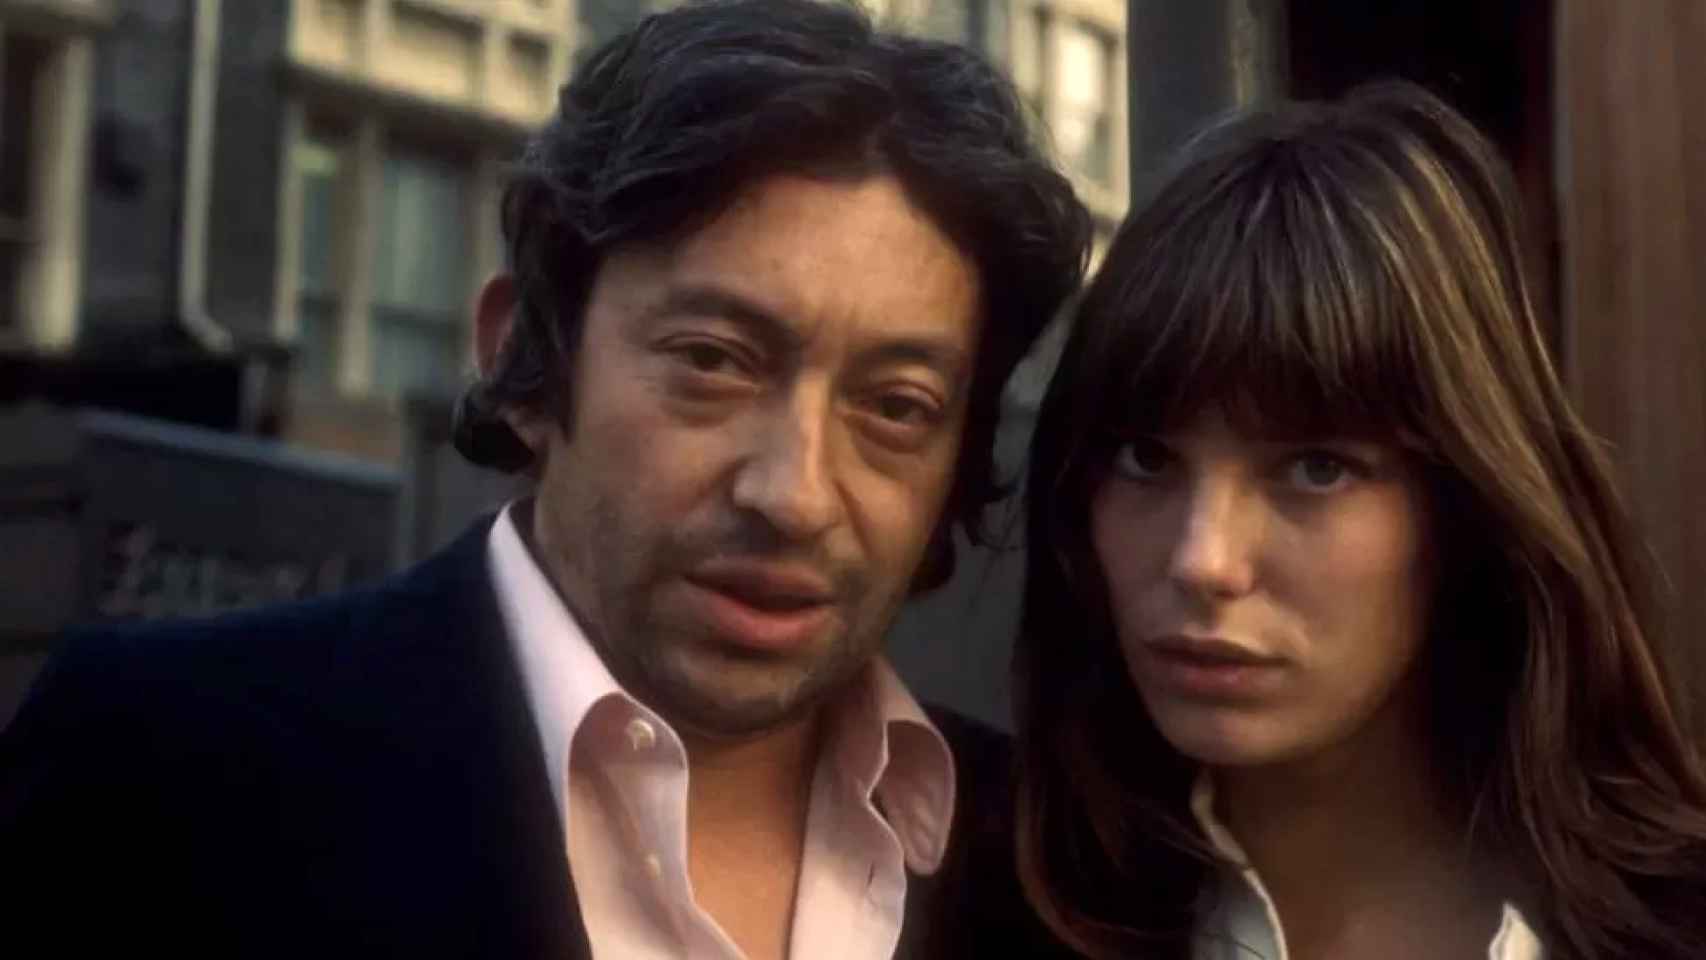 Jane Birkin y Serge Gainsbourg